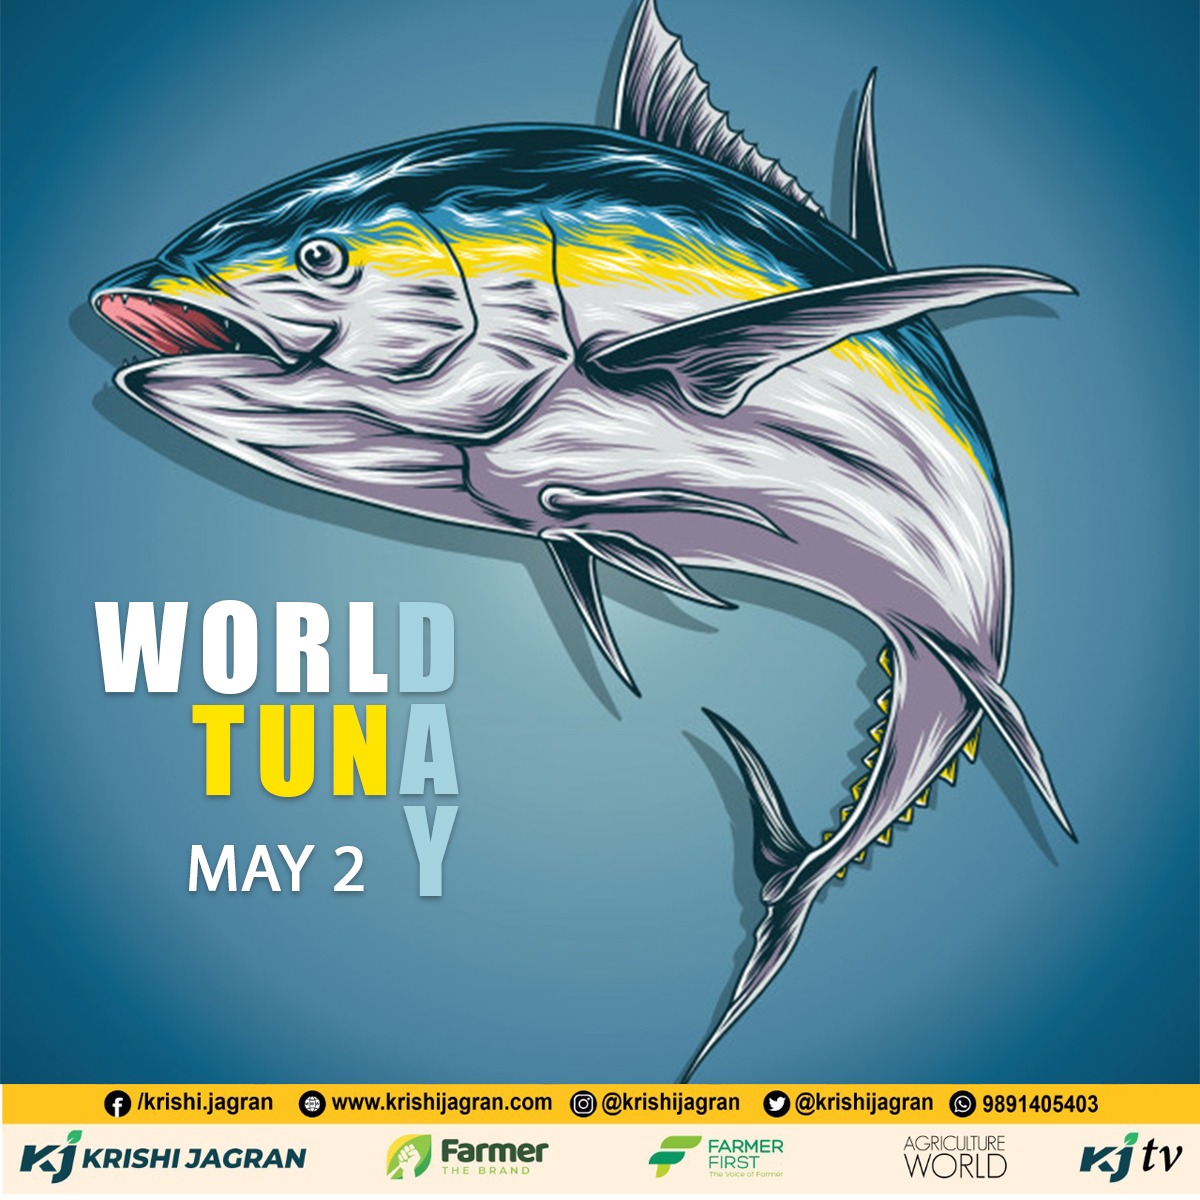 World Tuna Day 2021